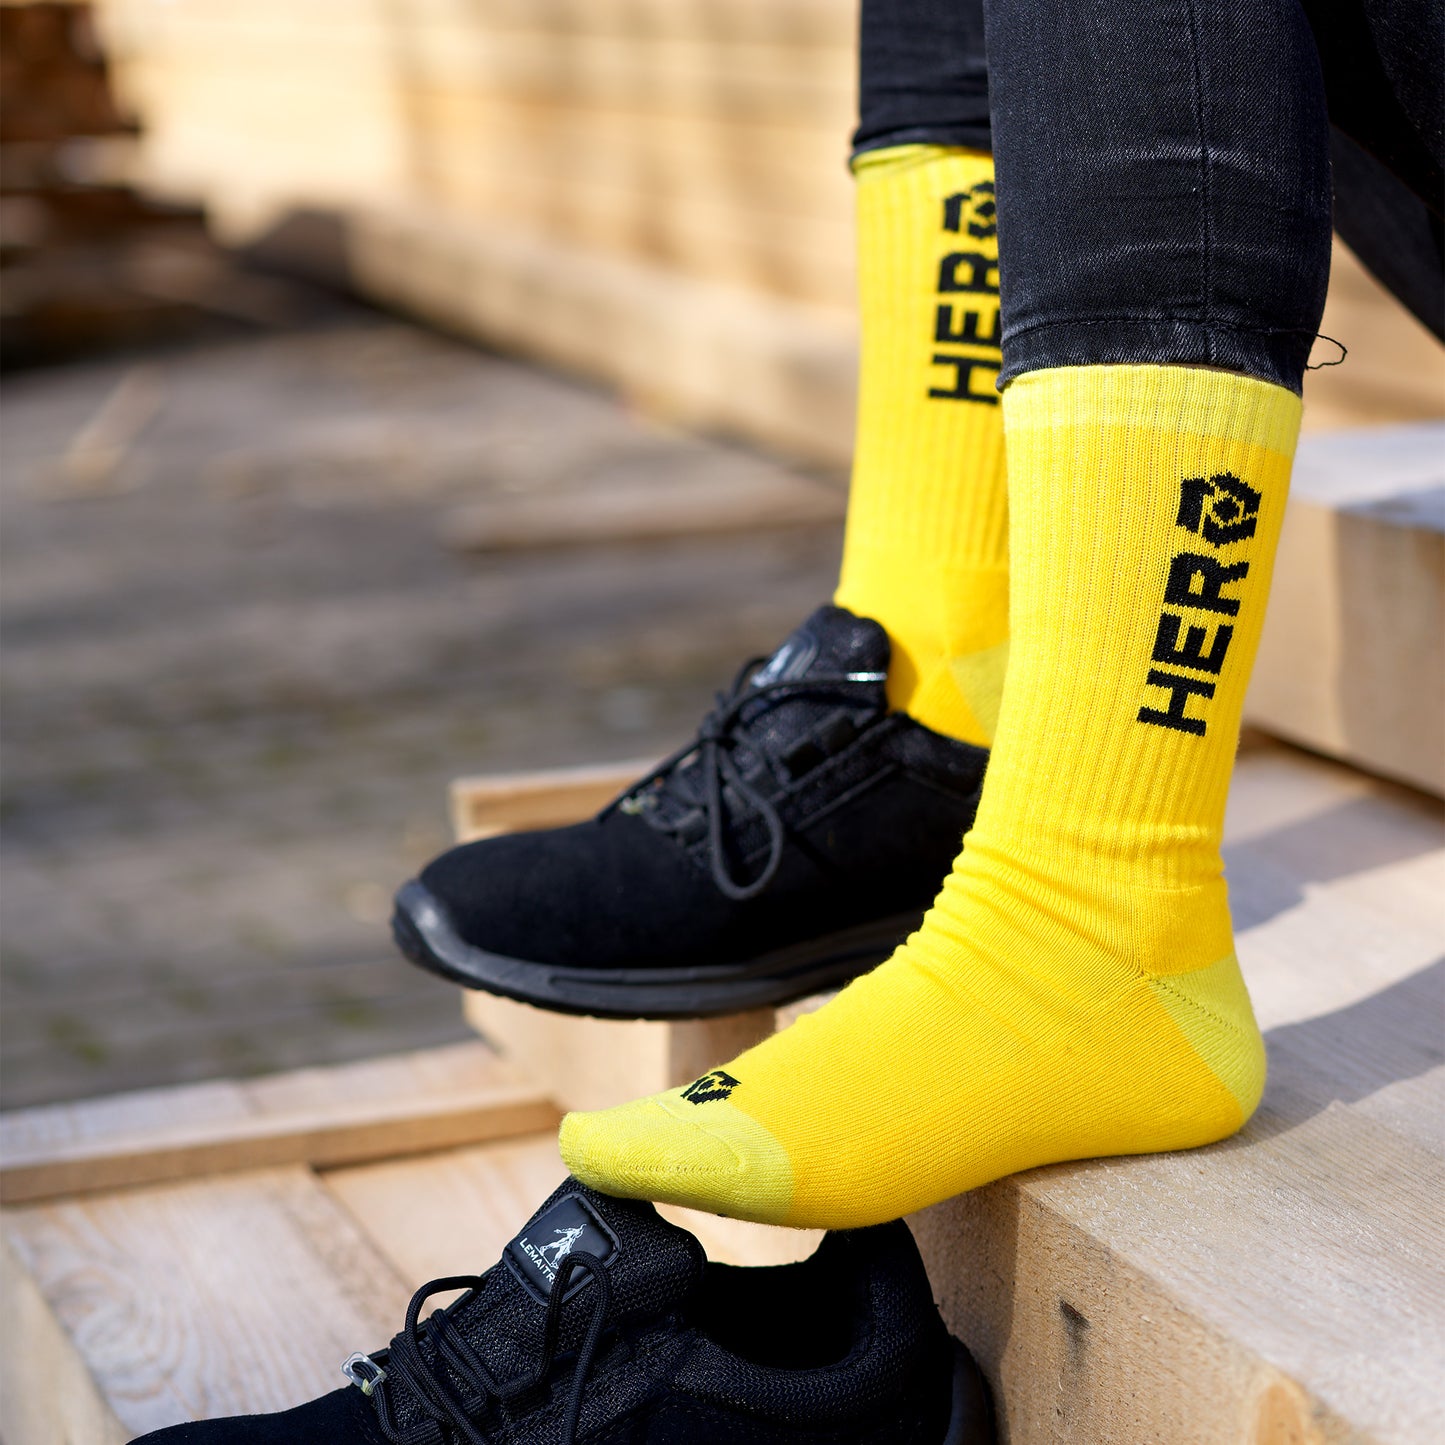 Bild: Die Hero Socken in gelb